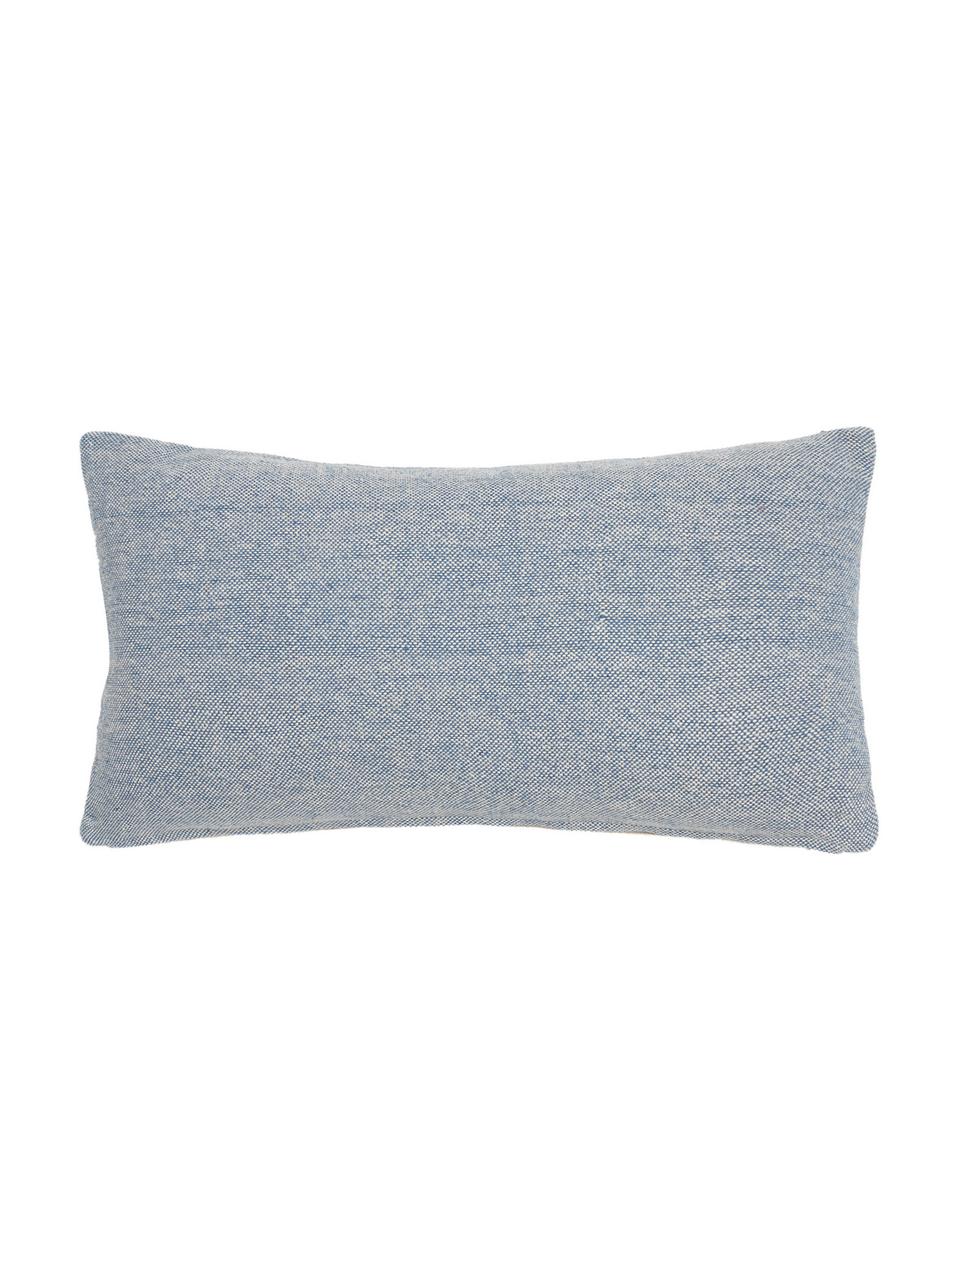 Poszewka na poduszkę Capri, 100% bawełna, Odcienie kremowego, niebieski, S 30 x D 60 cm